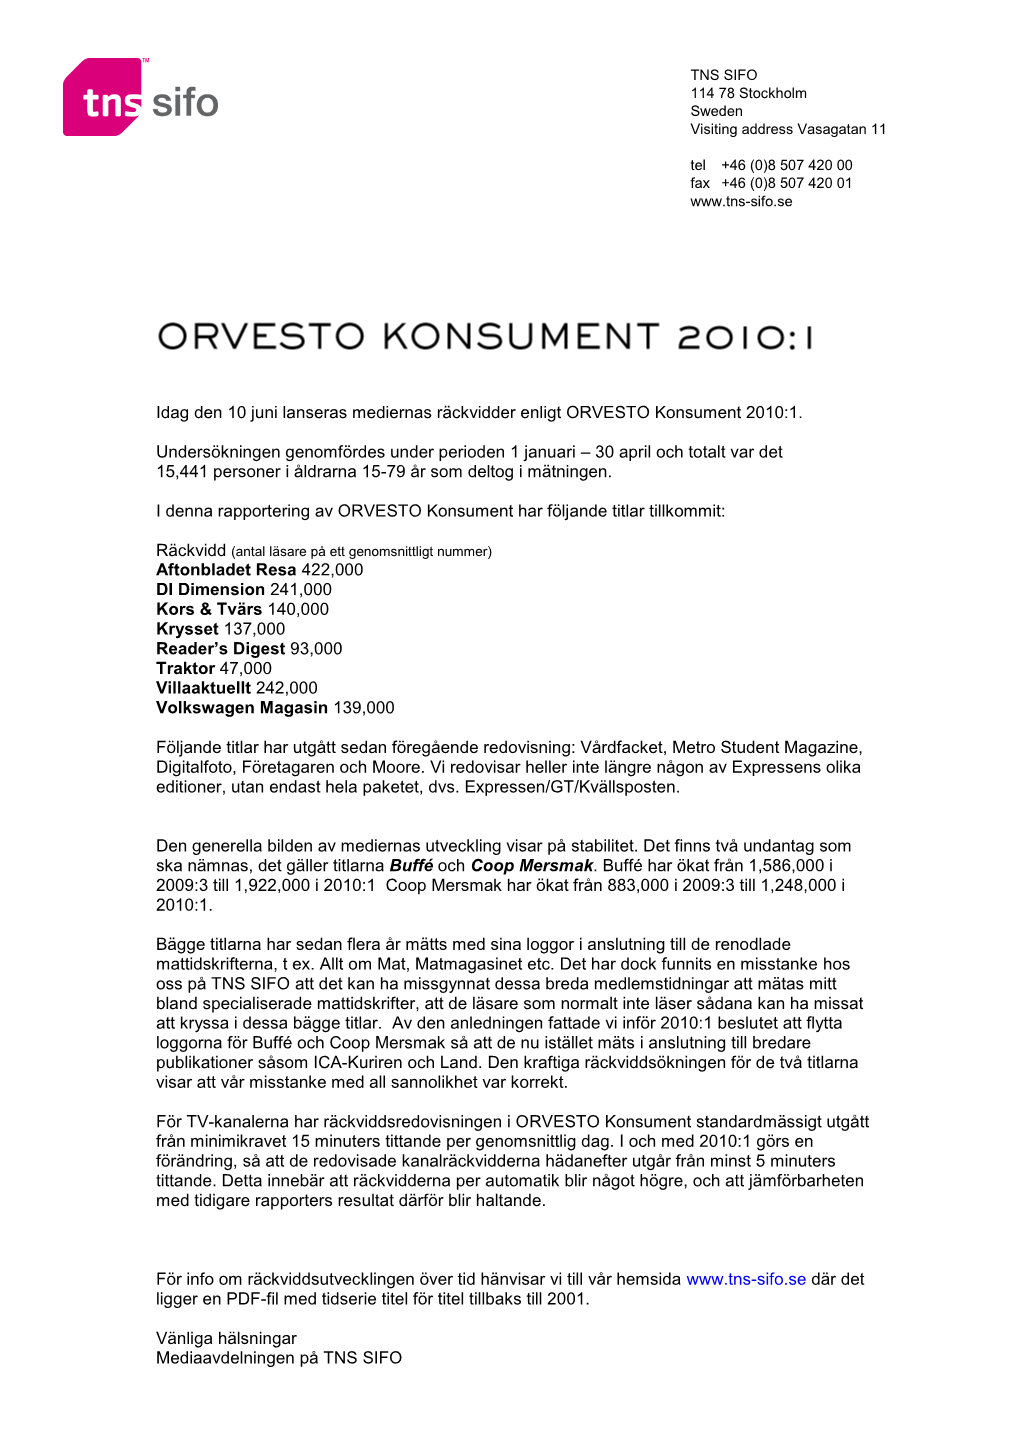 Rapport ORVESTO Konsument 2010:1